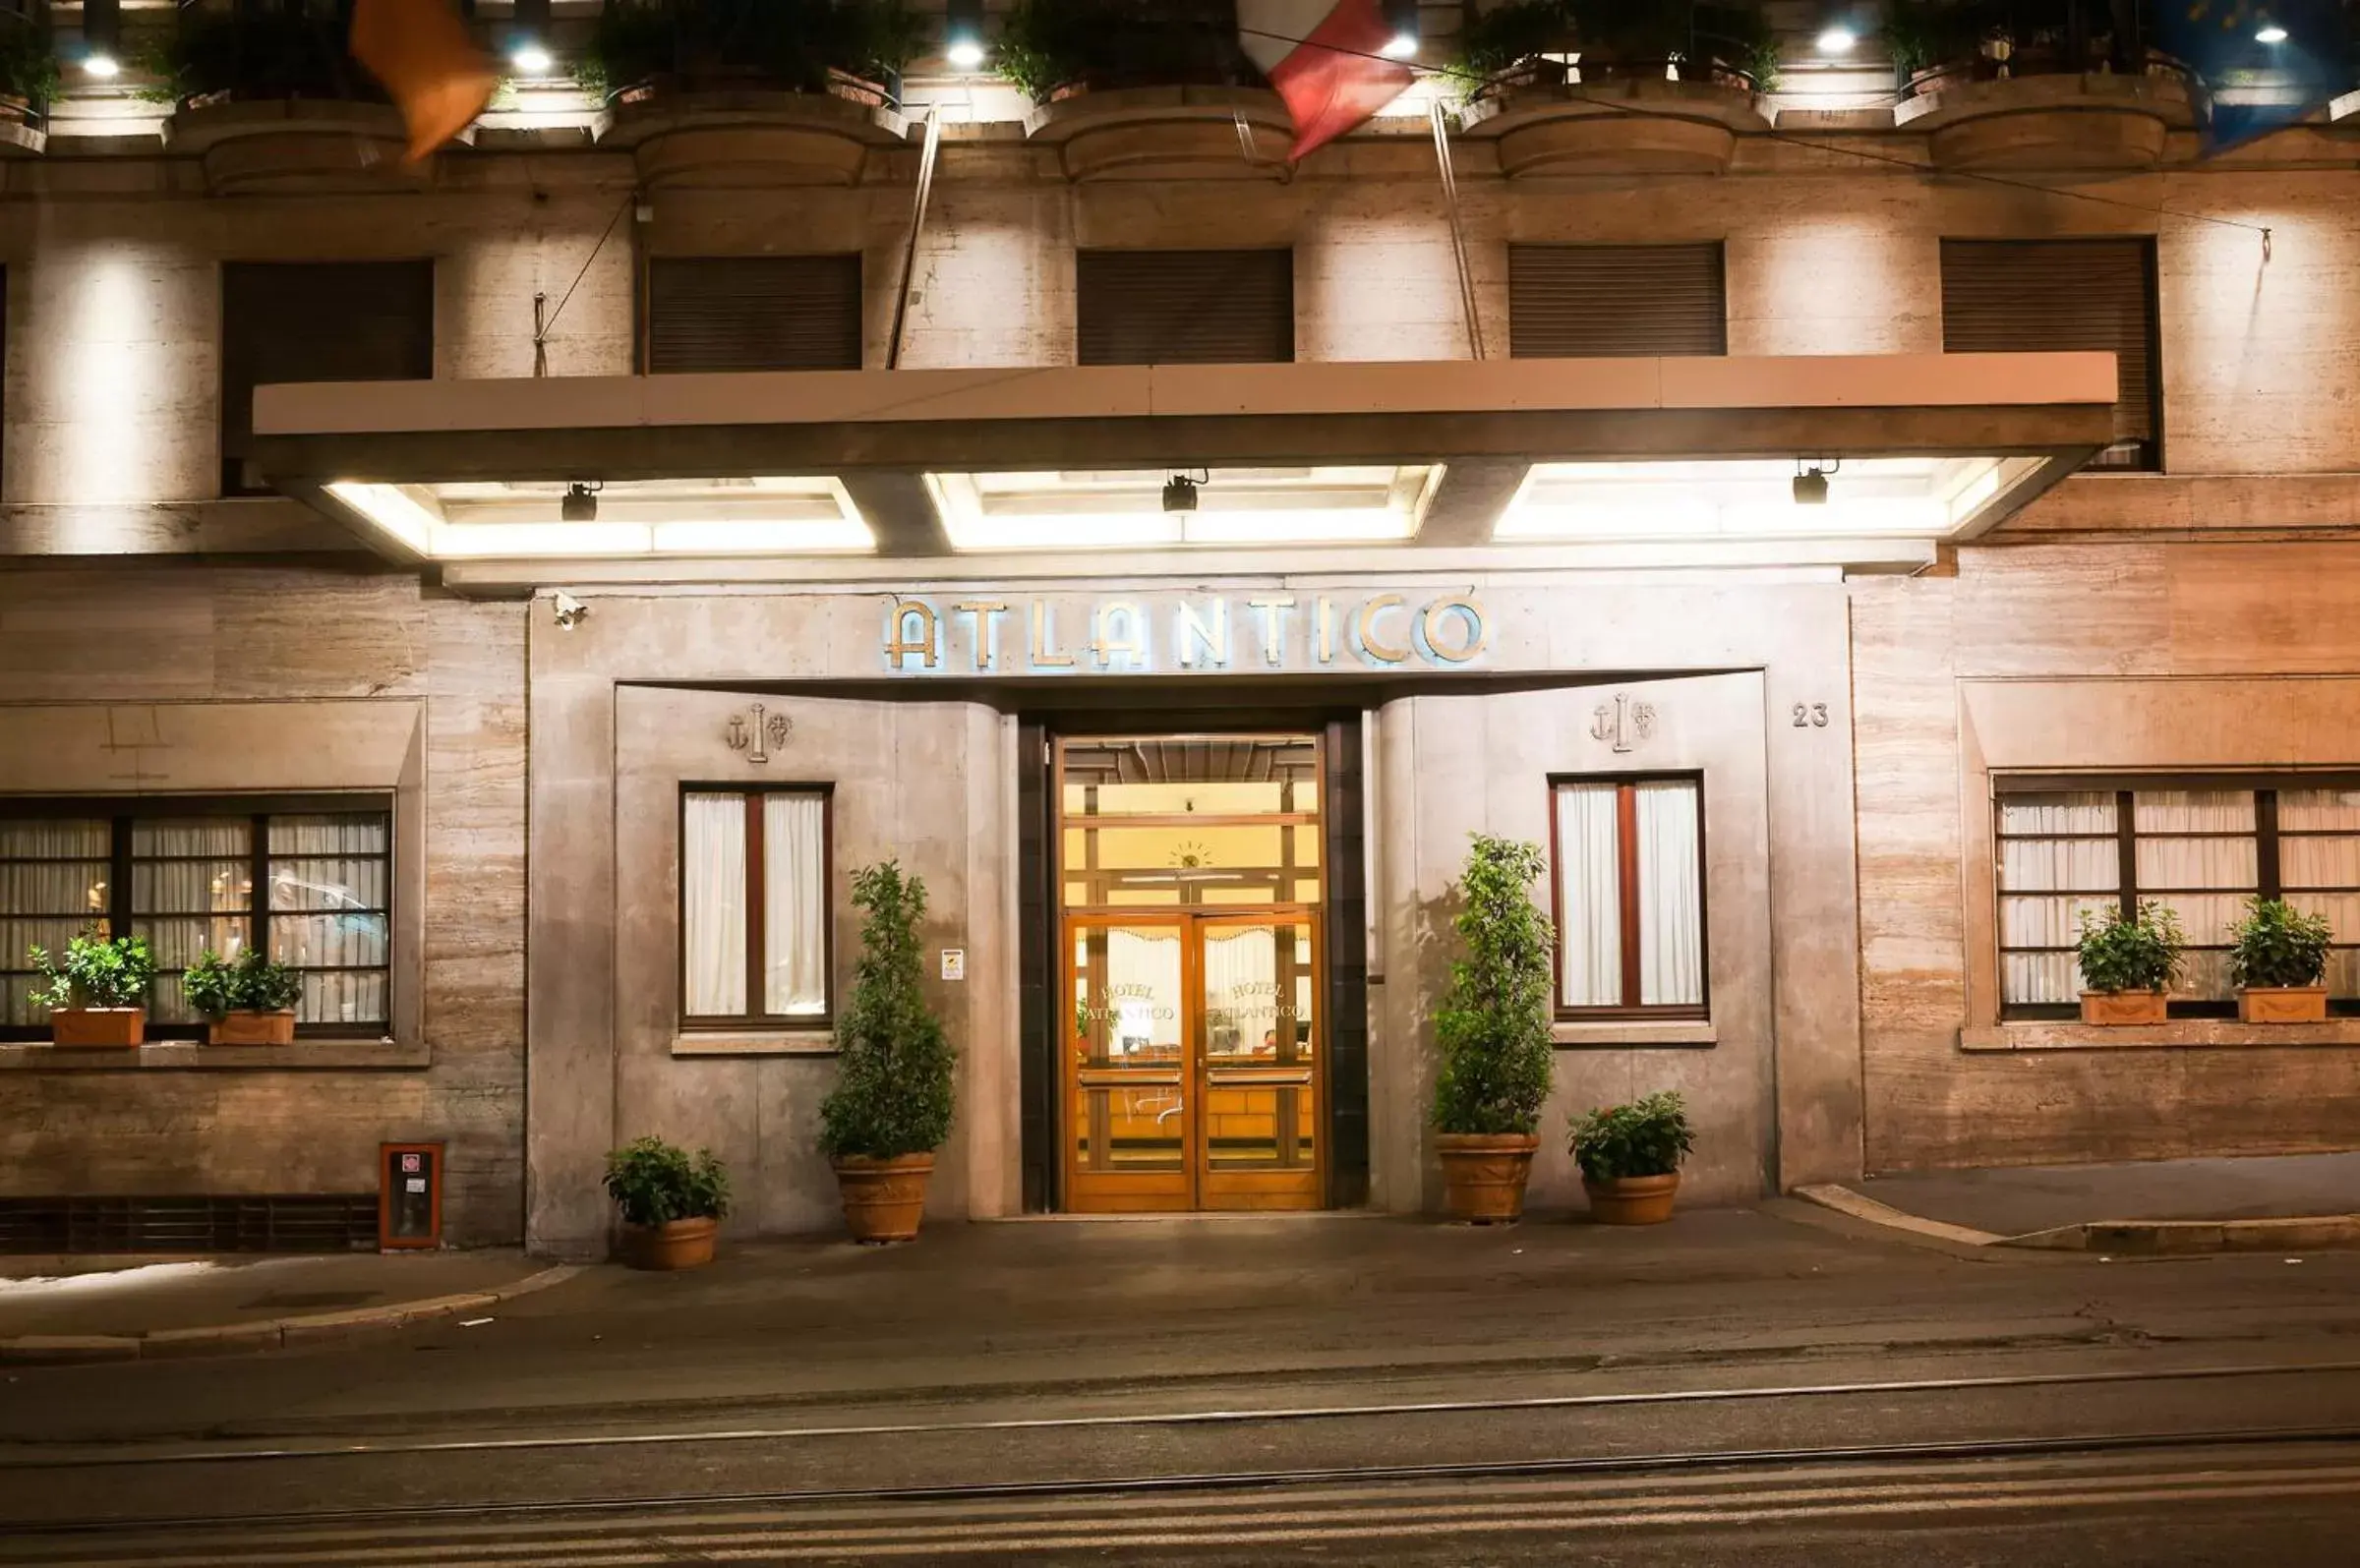 Facade/entrance in Bettoja Hotel Atlantico